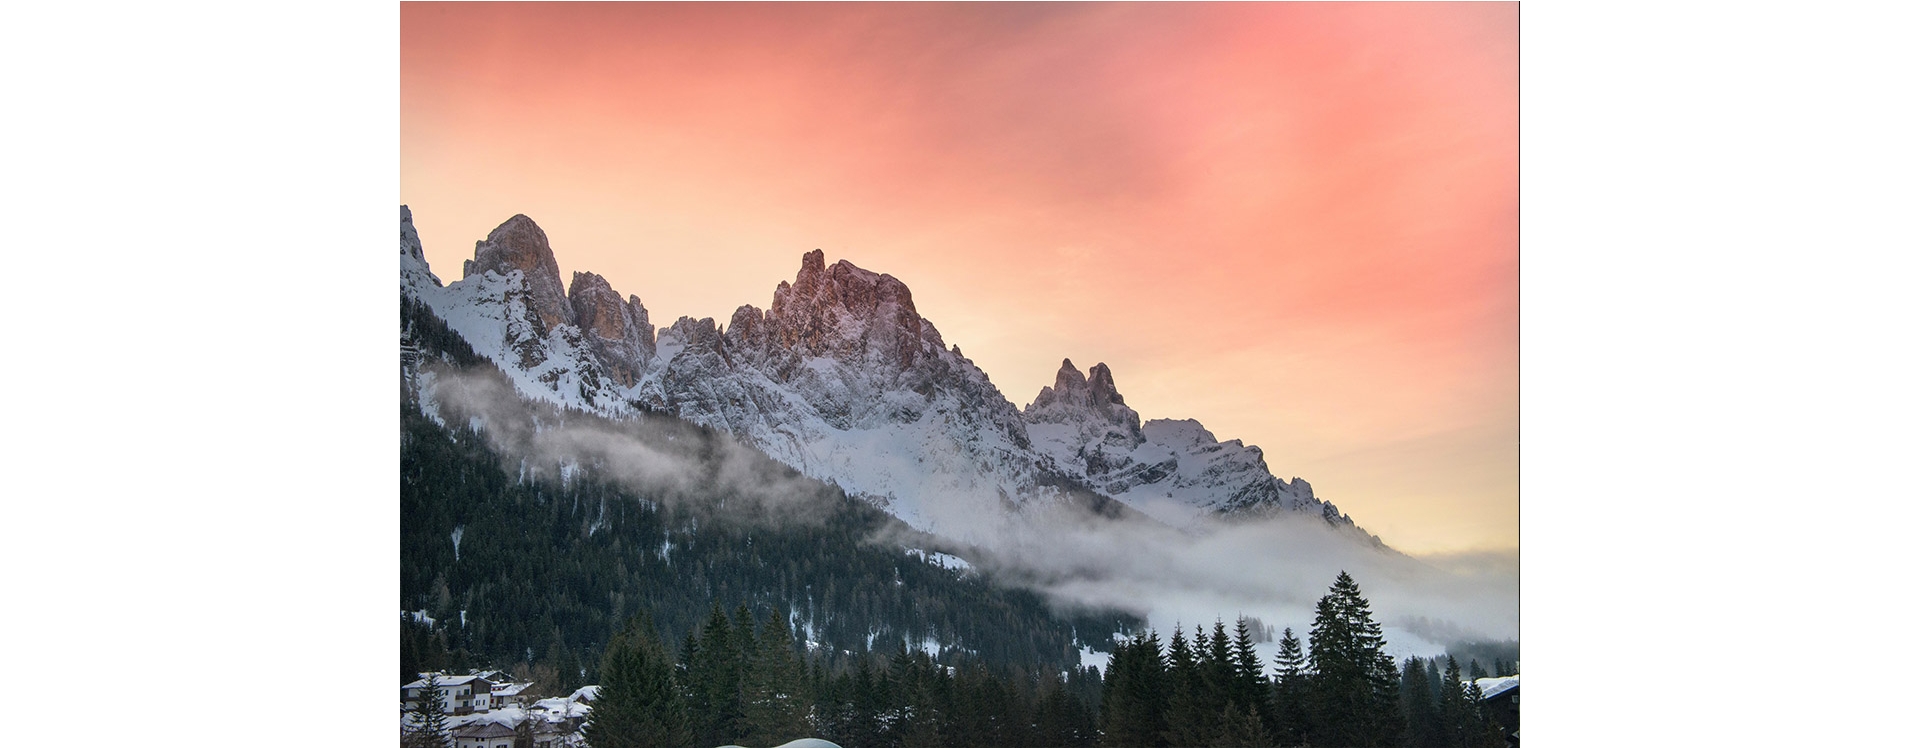 Trentino: regione di monti, vallate e natura incontaminata